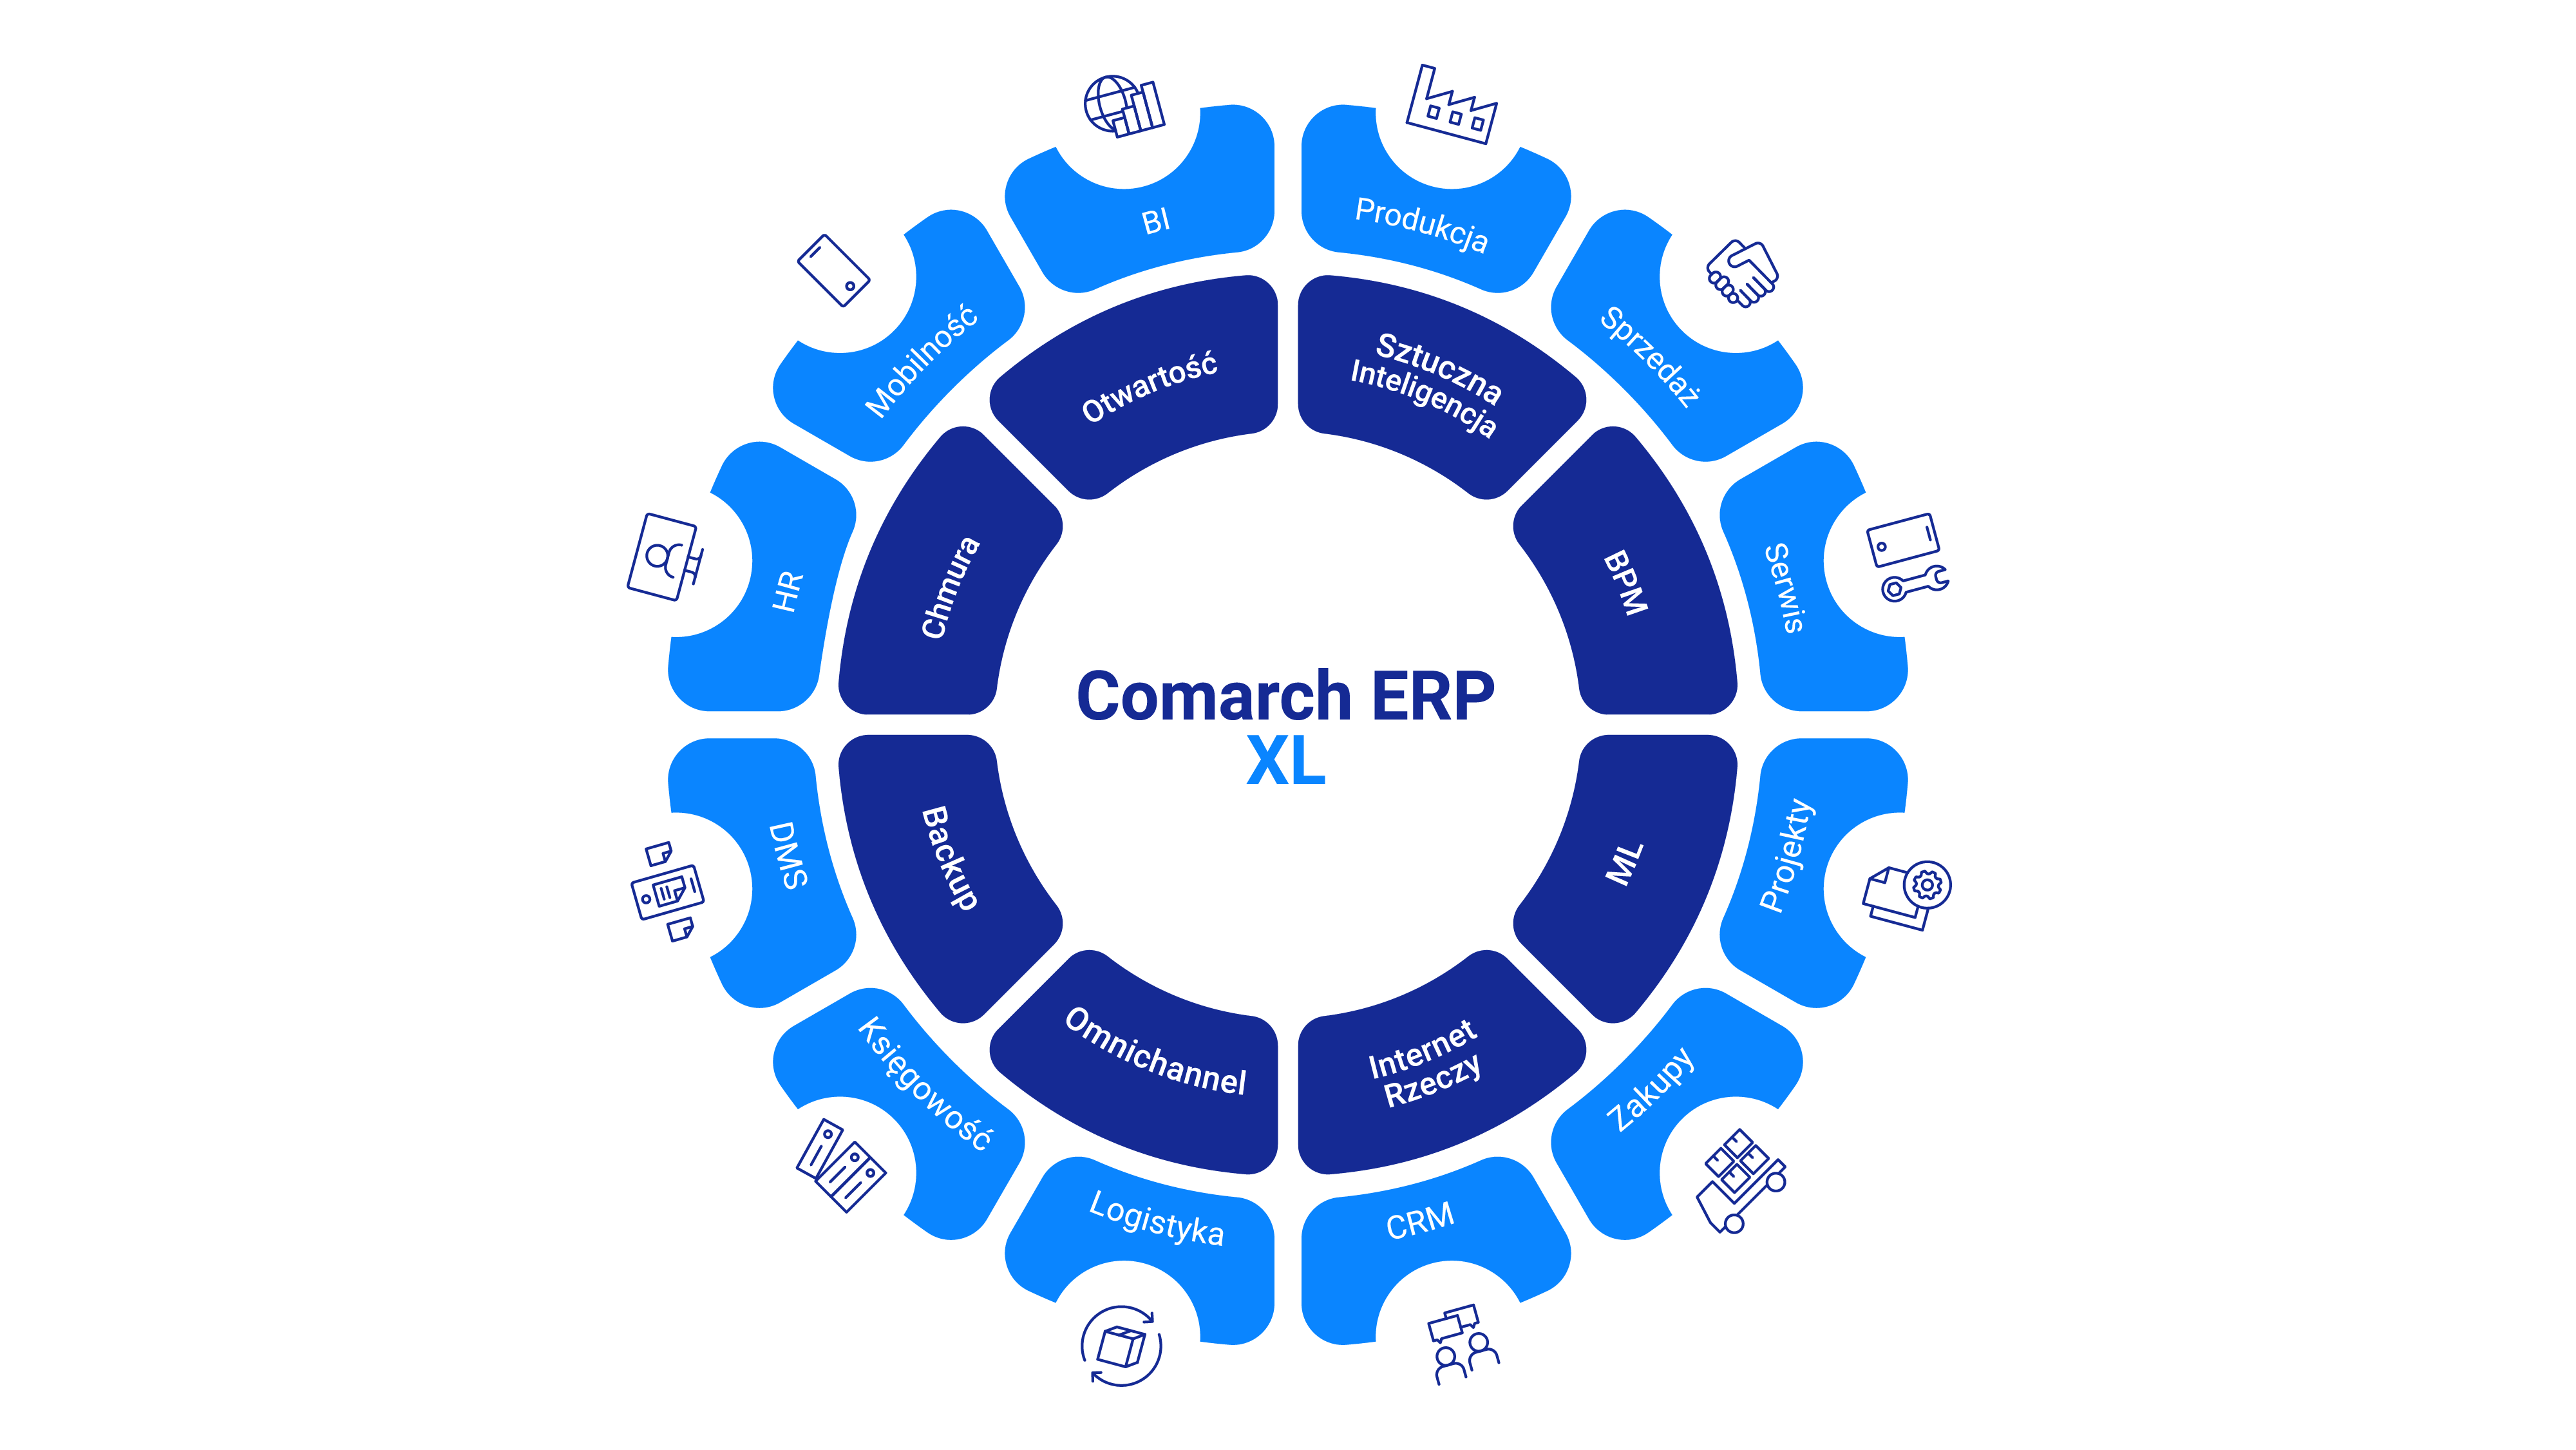 Infografika: System ERP od Comarch czyli ERP XL wspiera 12 obszarów biznesowych